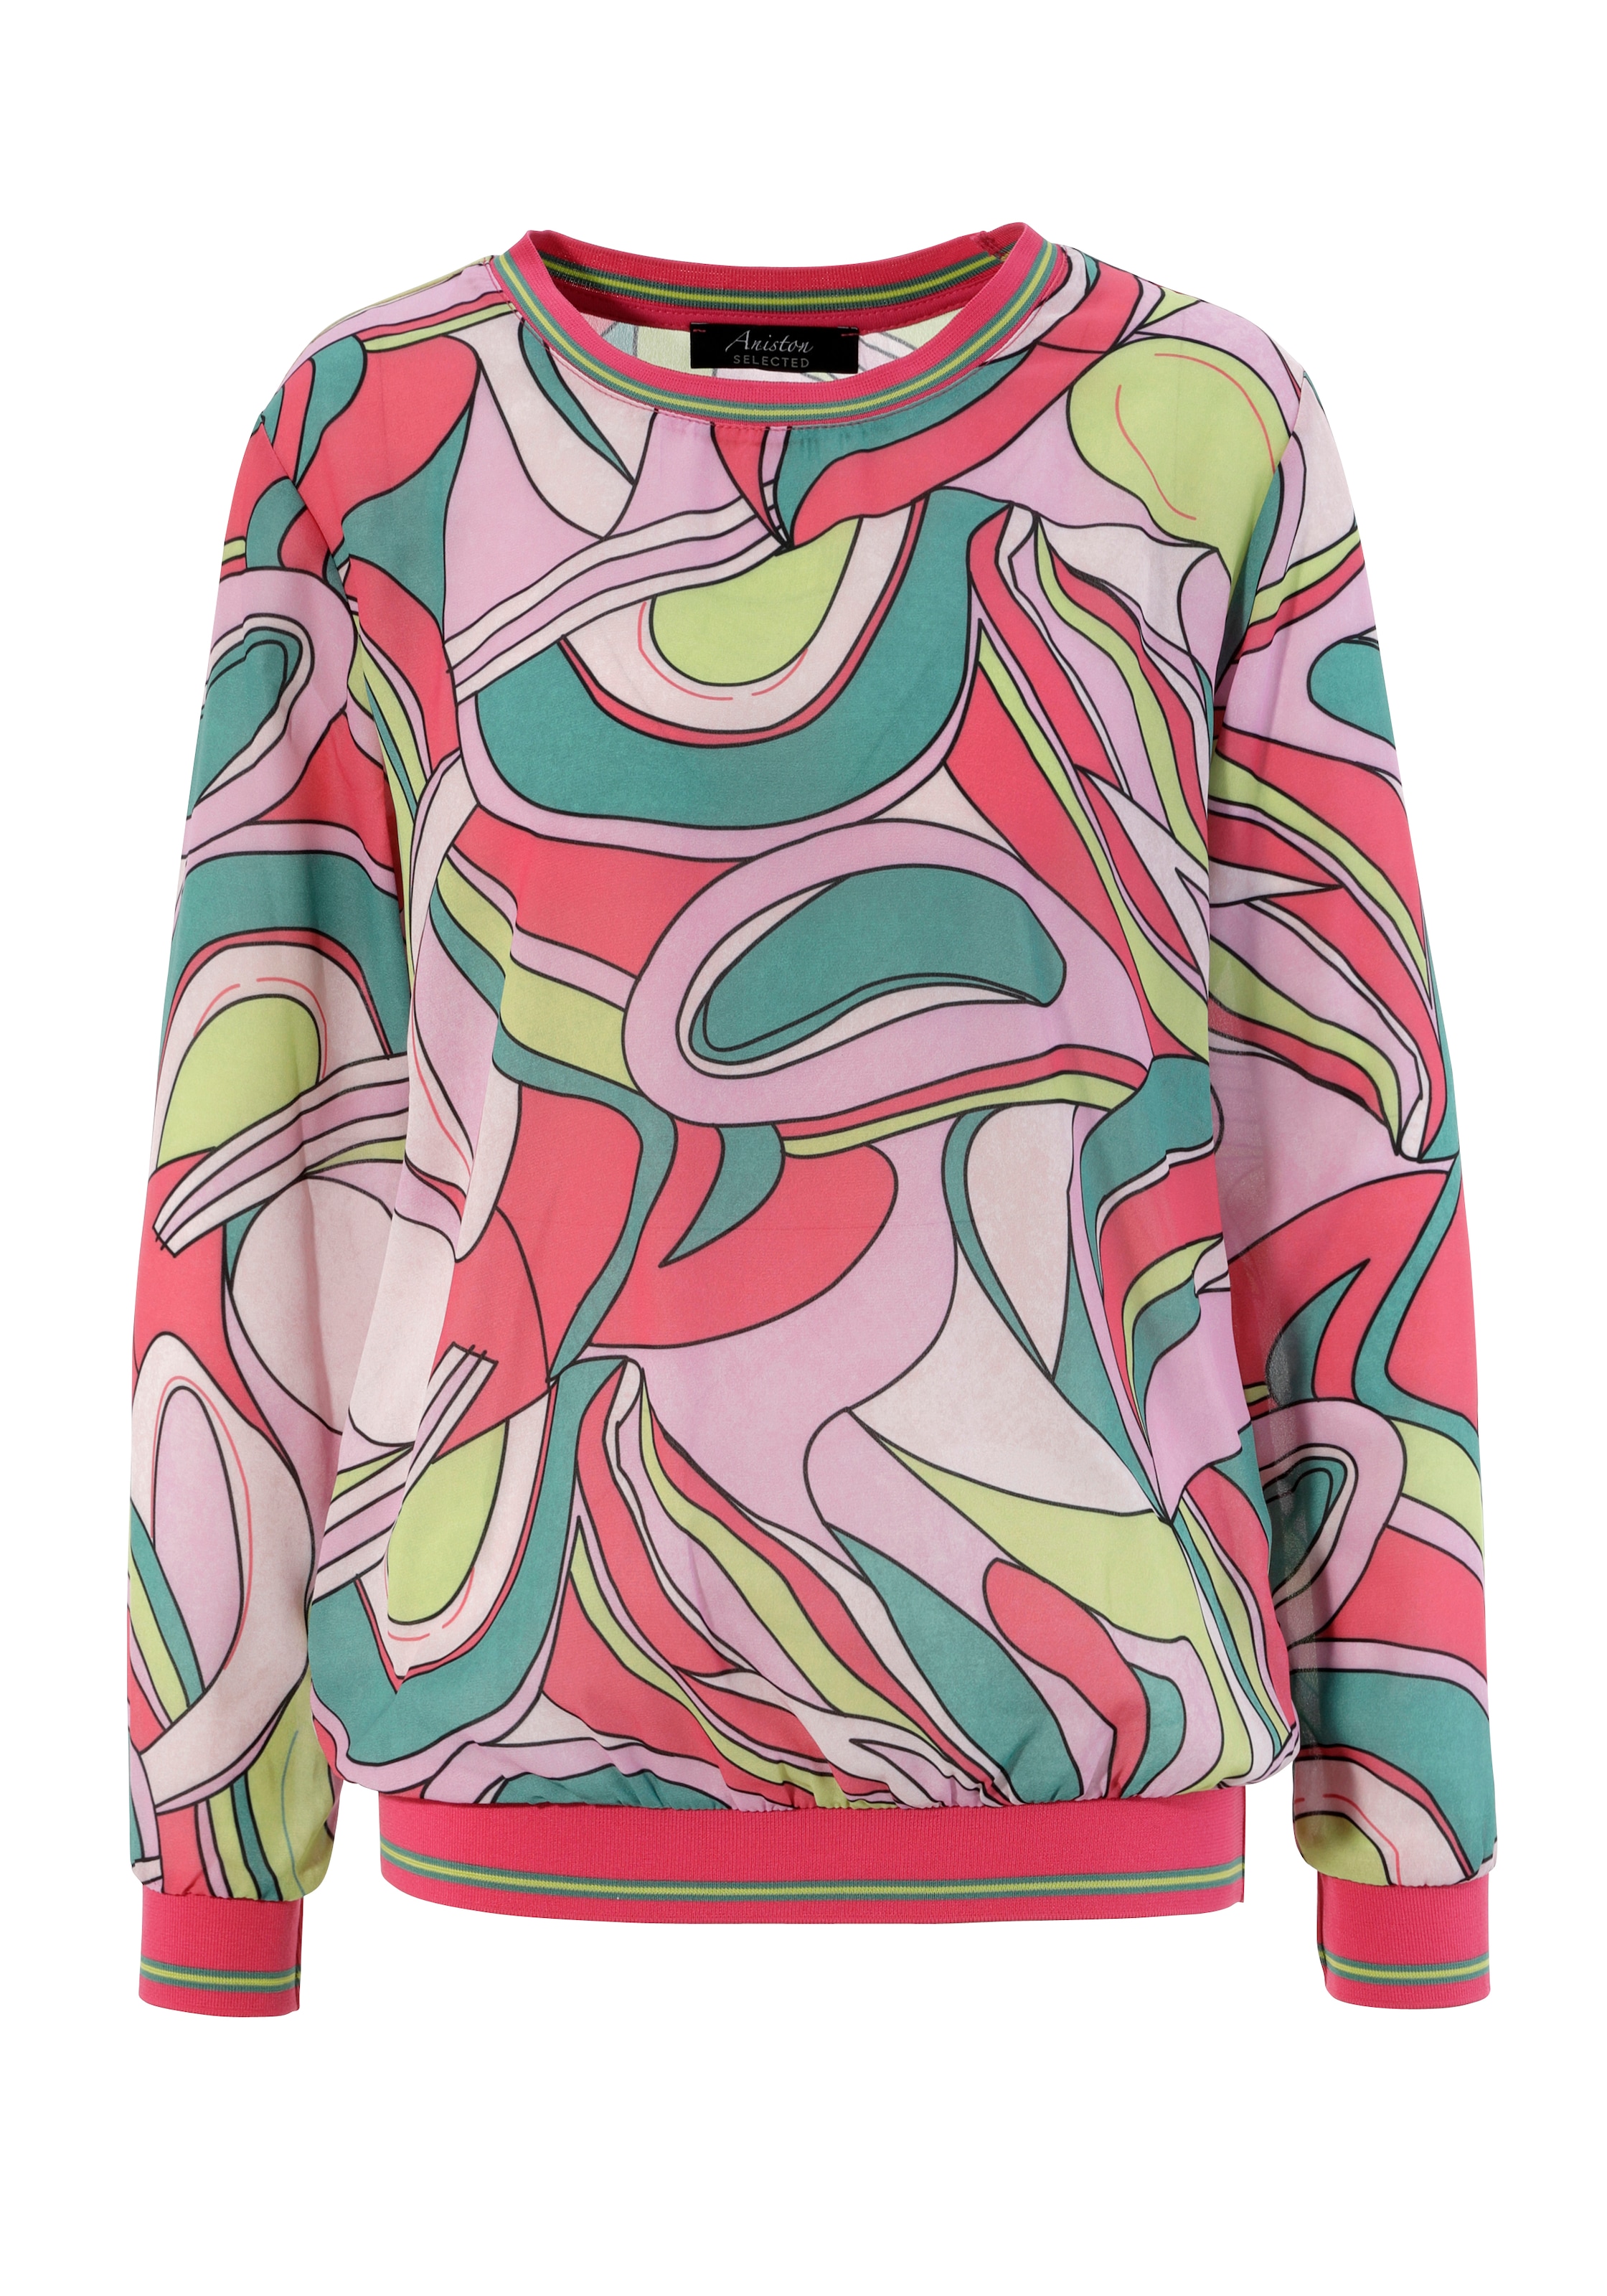 SELECTED OTTO gestreiften Aniston und Shirtbluse, mit im kaufen Online Allover-Muster Shop Rippbündchen